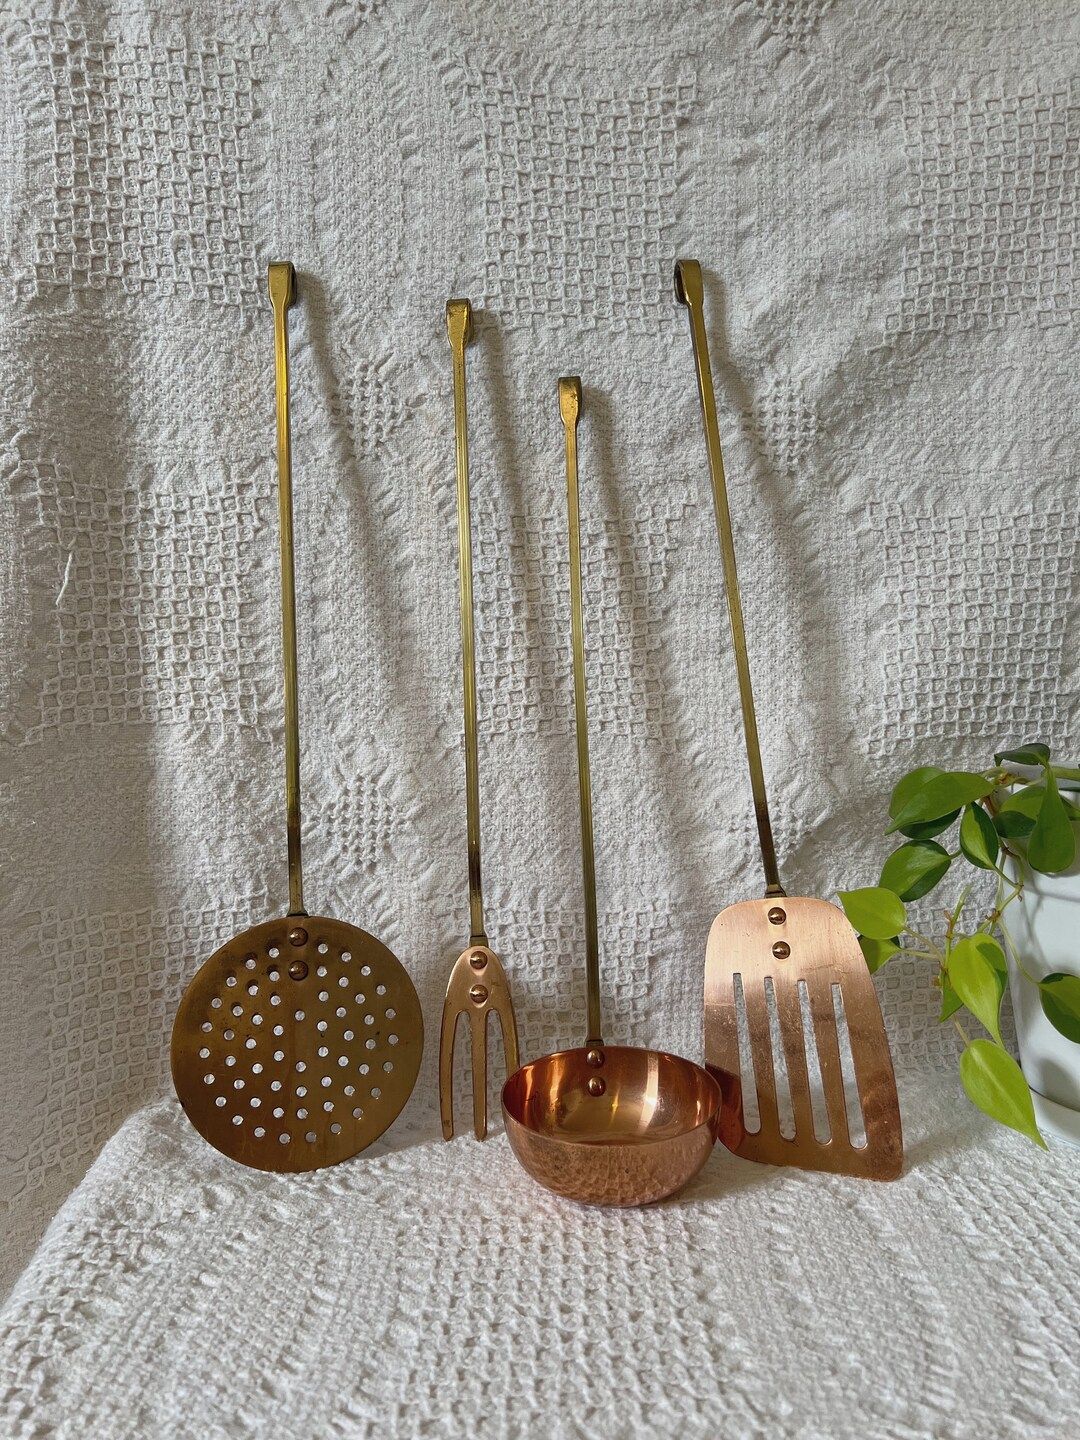 Vintage set of copper kitchenware - vintage copper kitchenware set - vintage kitchenware | Etsy ROW